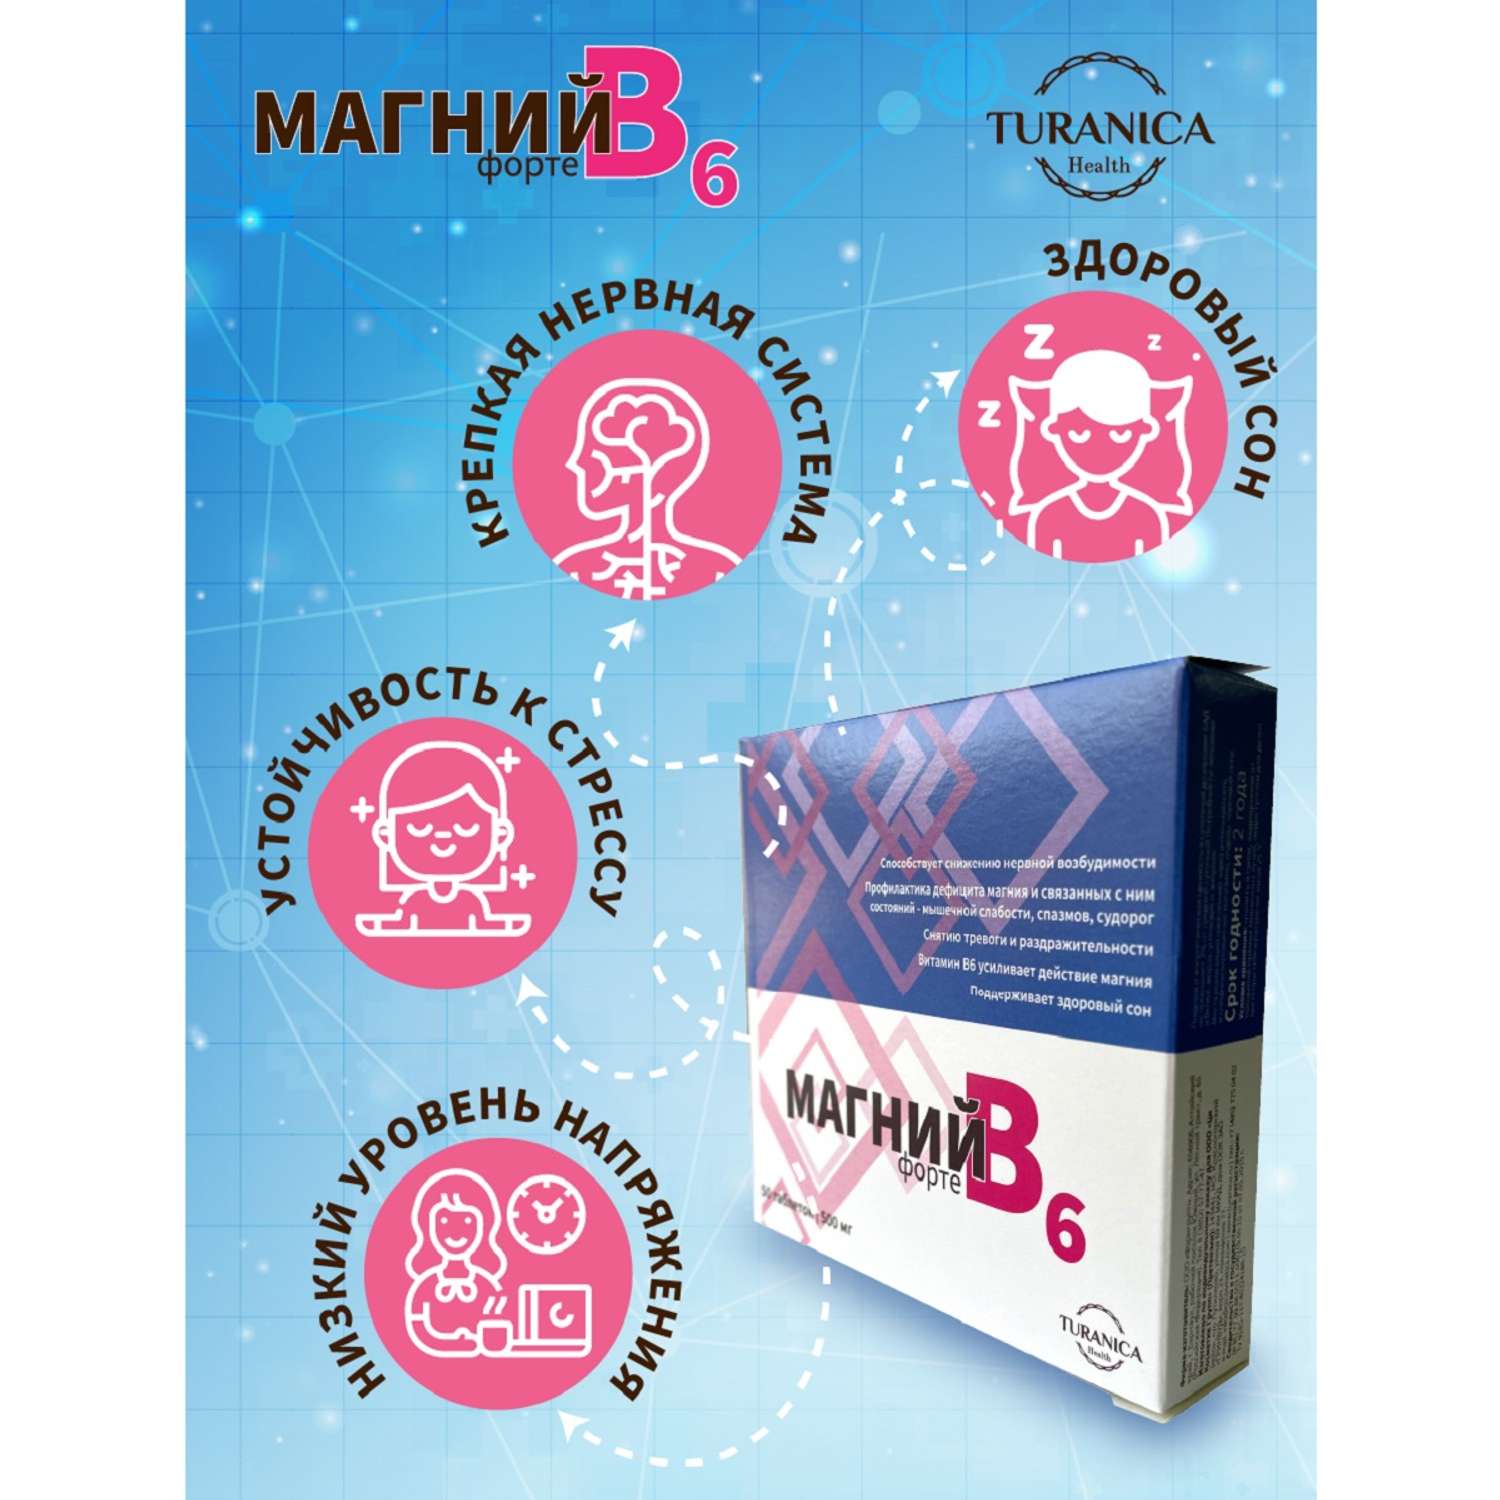 Магний В6 форте TURANICA 50 таблеток по 500 мг - фото 2